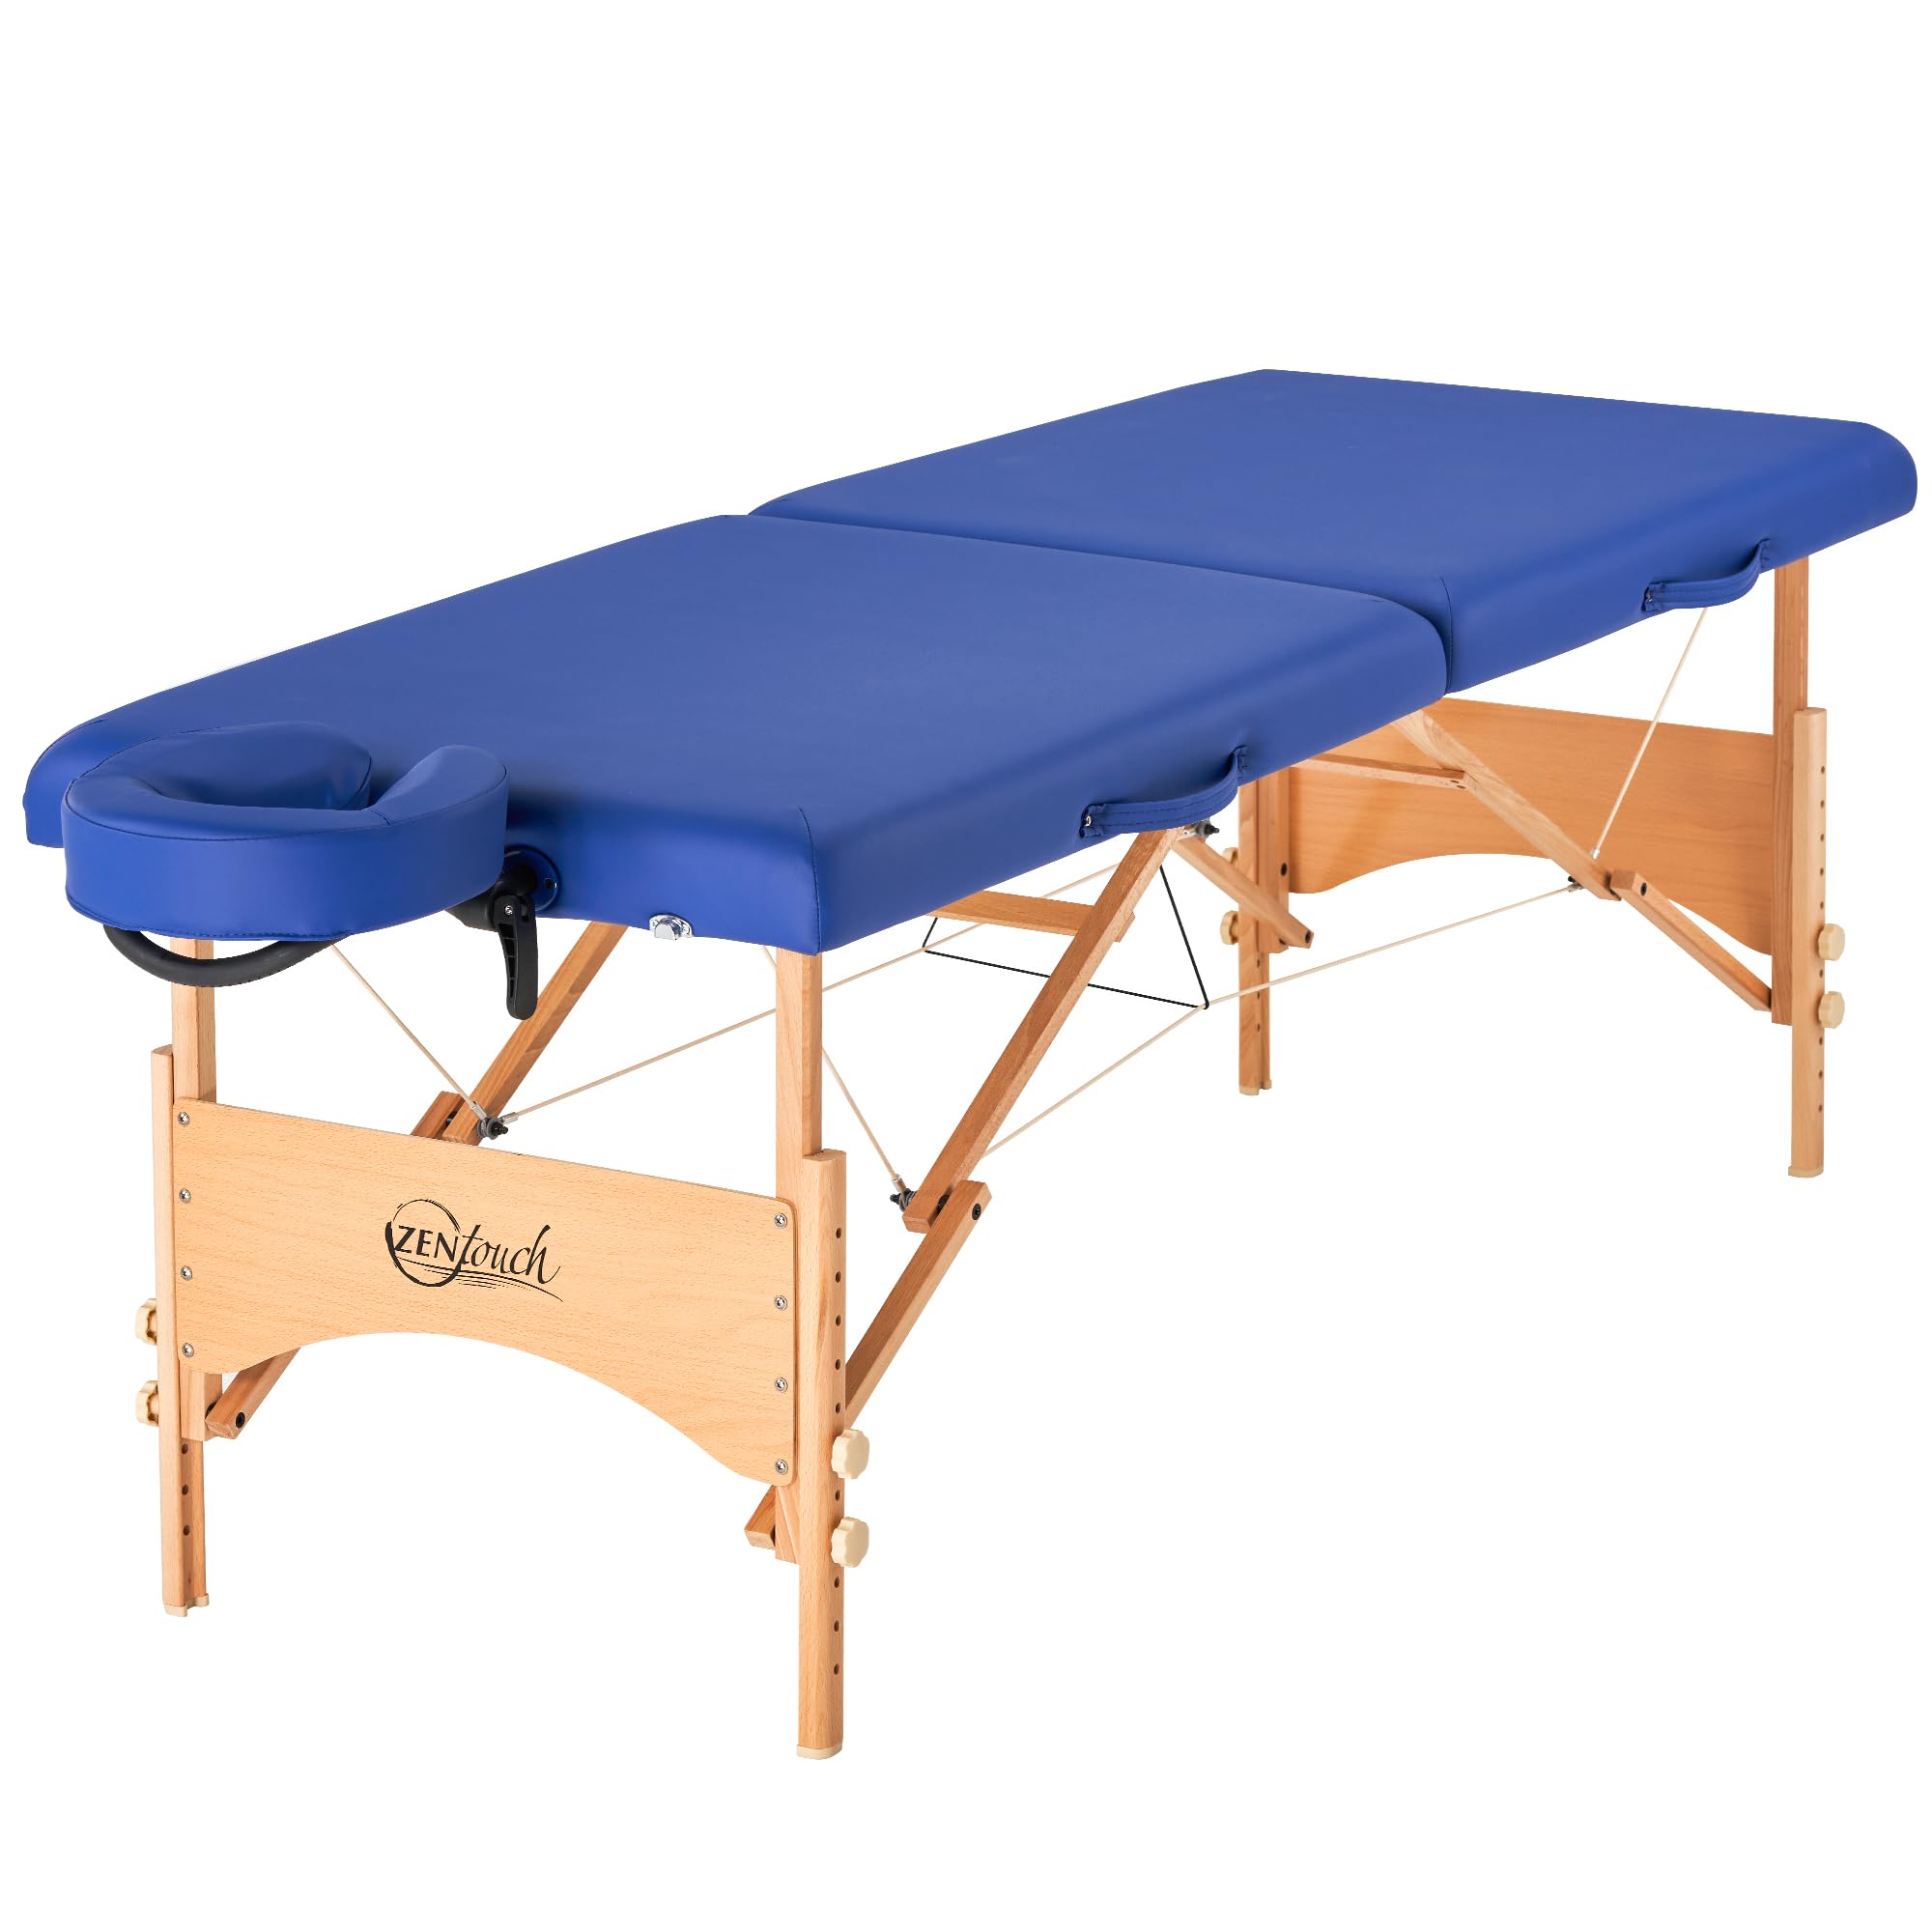 Master Massage 69cm Brady Pro Portable Mobil Massageliegenpaket in Himmelblau/Sky Blue mit Holzfuߟ und Tragetasche Massageliege, blau, Holz